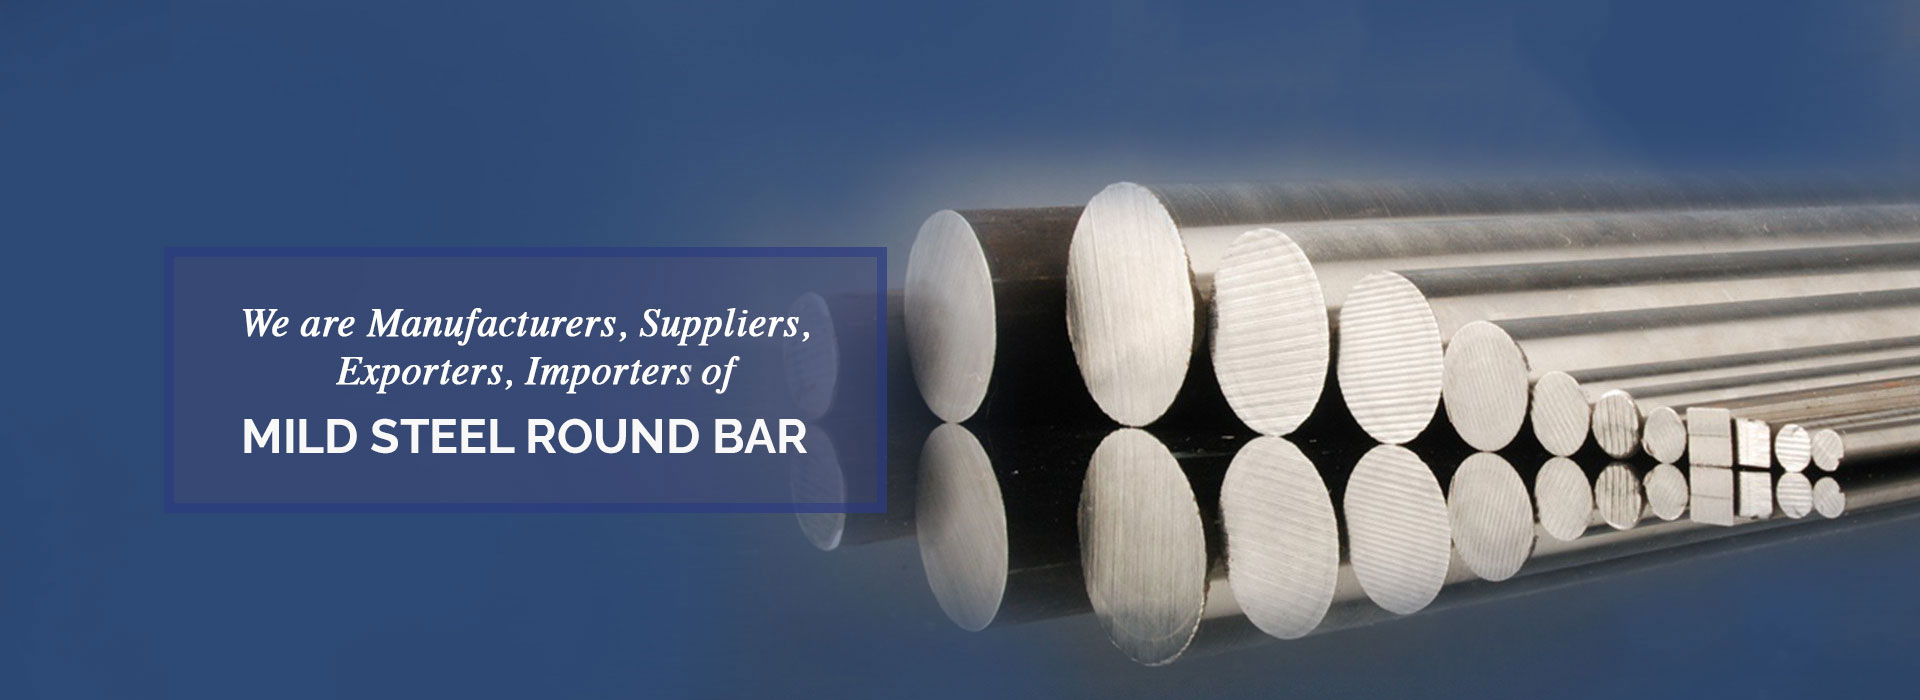 Mild Steel Round Bar Manufacturers in Singapore